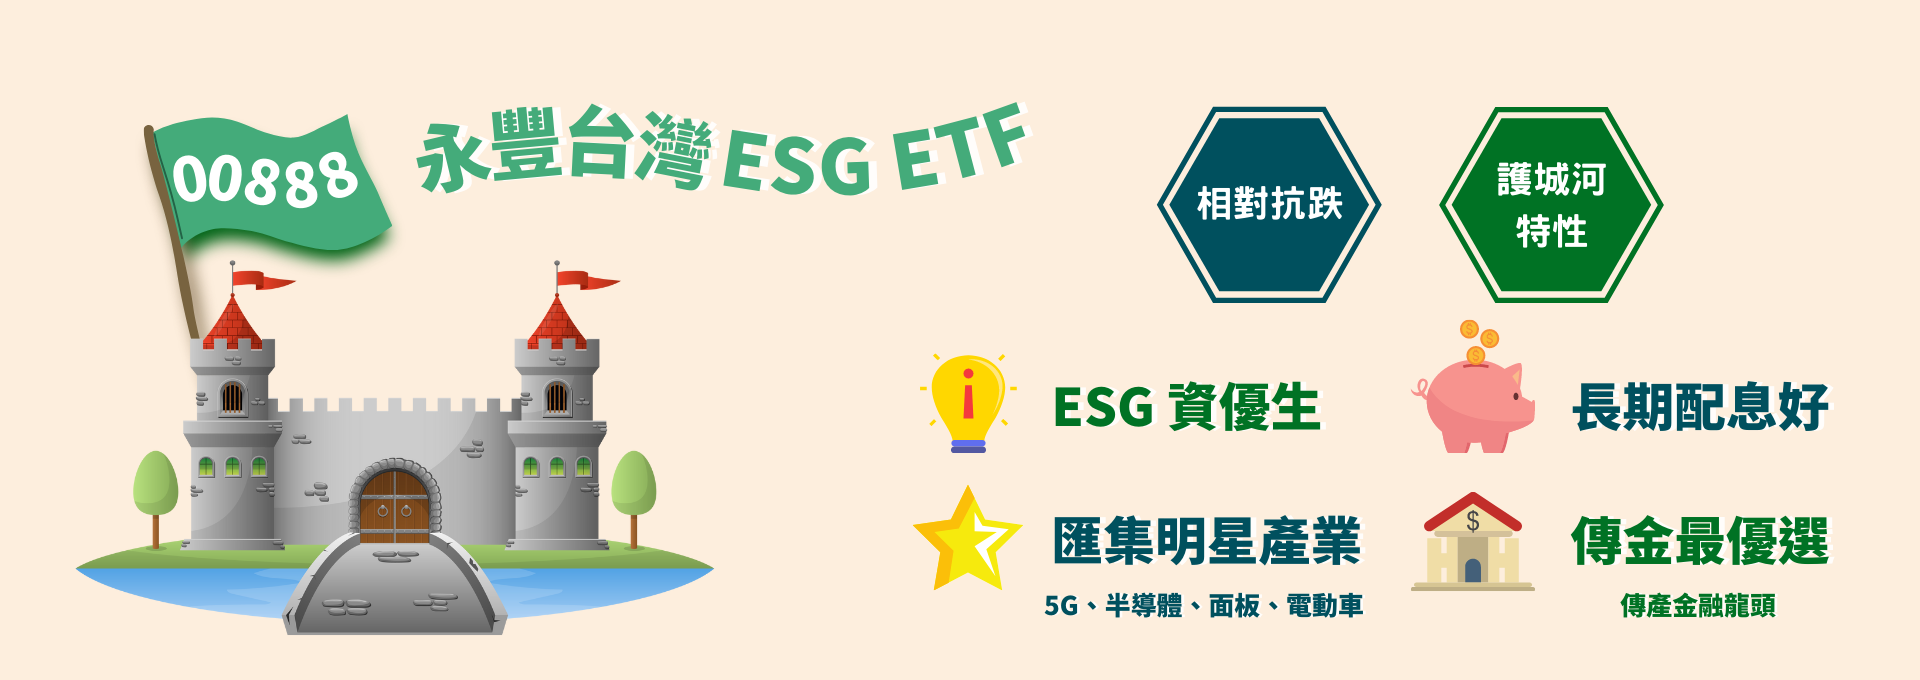 永豐台灣ESG永續優質ETF(00888)